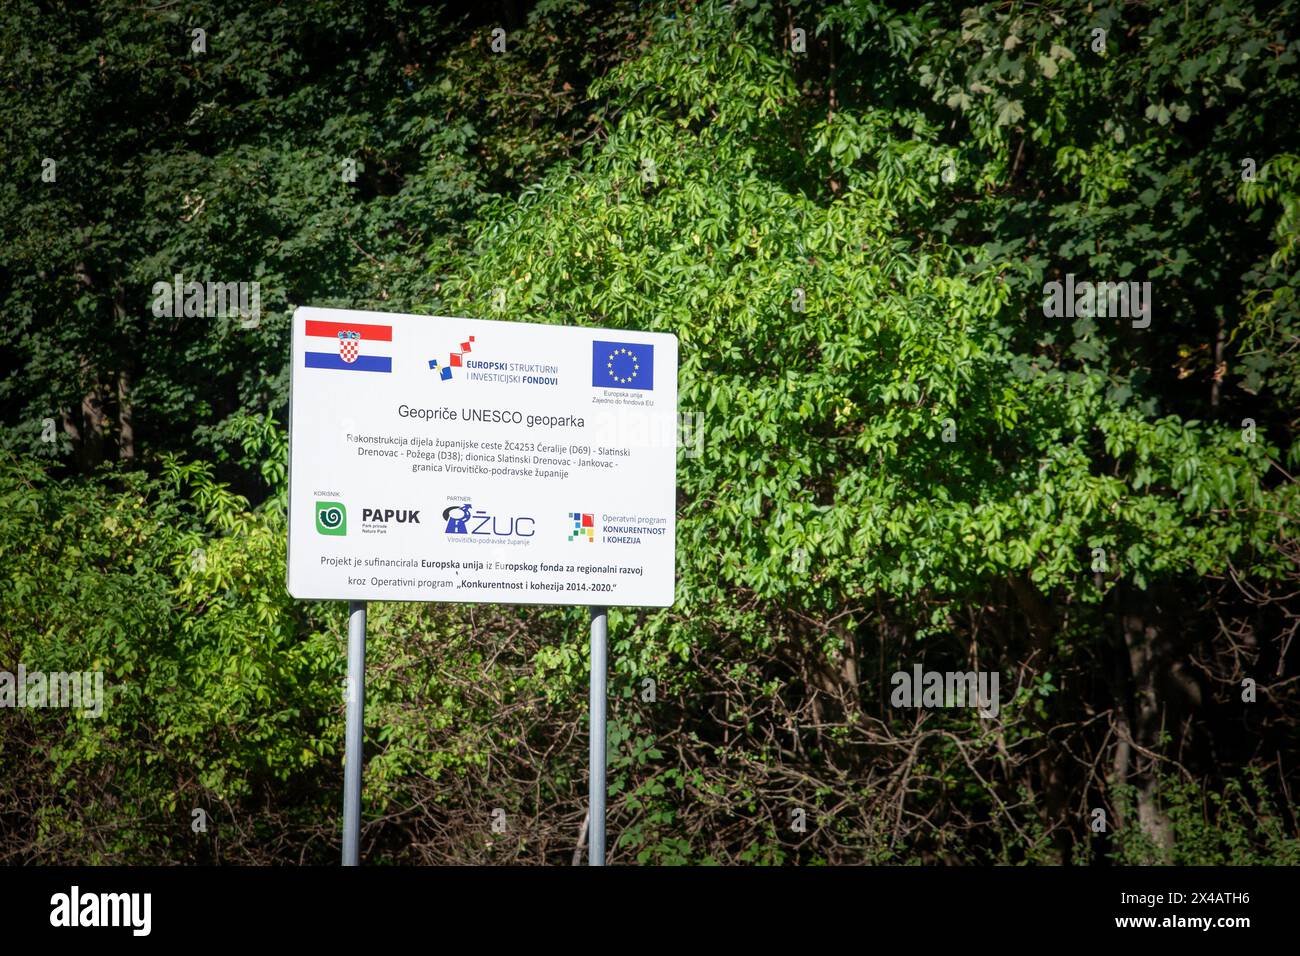 Abbildung eines Schildes, das anzeigt, dass ein Projekt von der kroatischen Regierung und der Europäischen Union in Kroatien, Papuk, über die europäische Struktur A finanziert wird Stockfoto